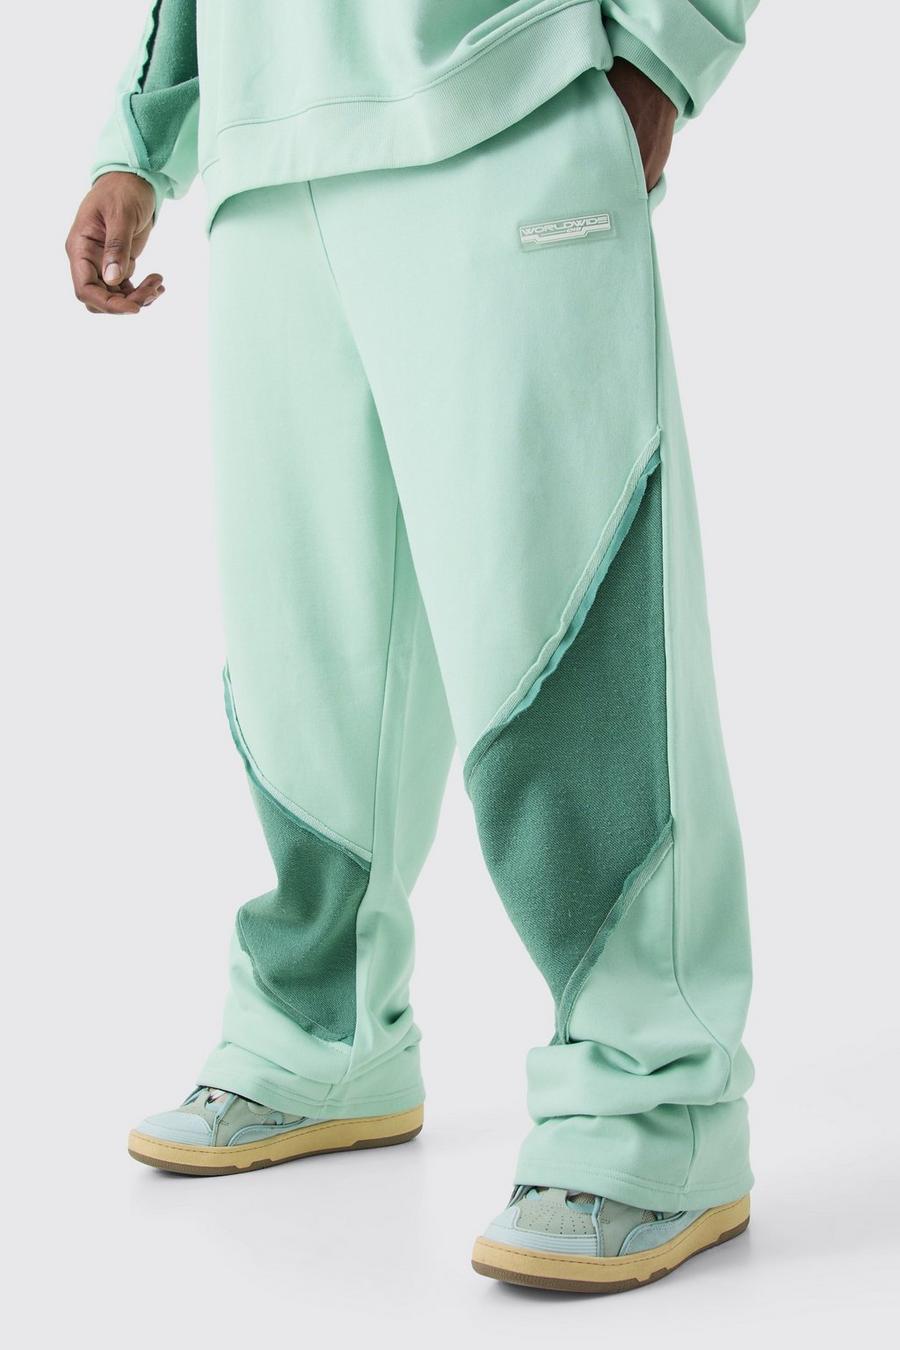 Pantaloni tuta Plus Size rilassati con pannelli arricciati sul retro e fondo grezzo, Mint image number 1